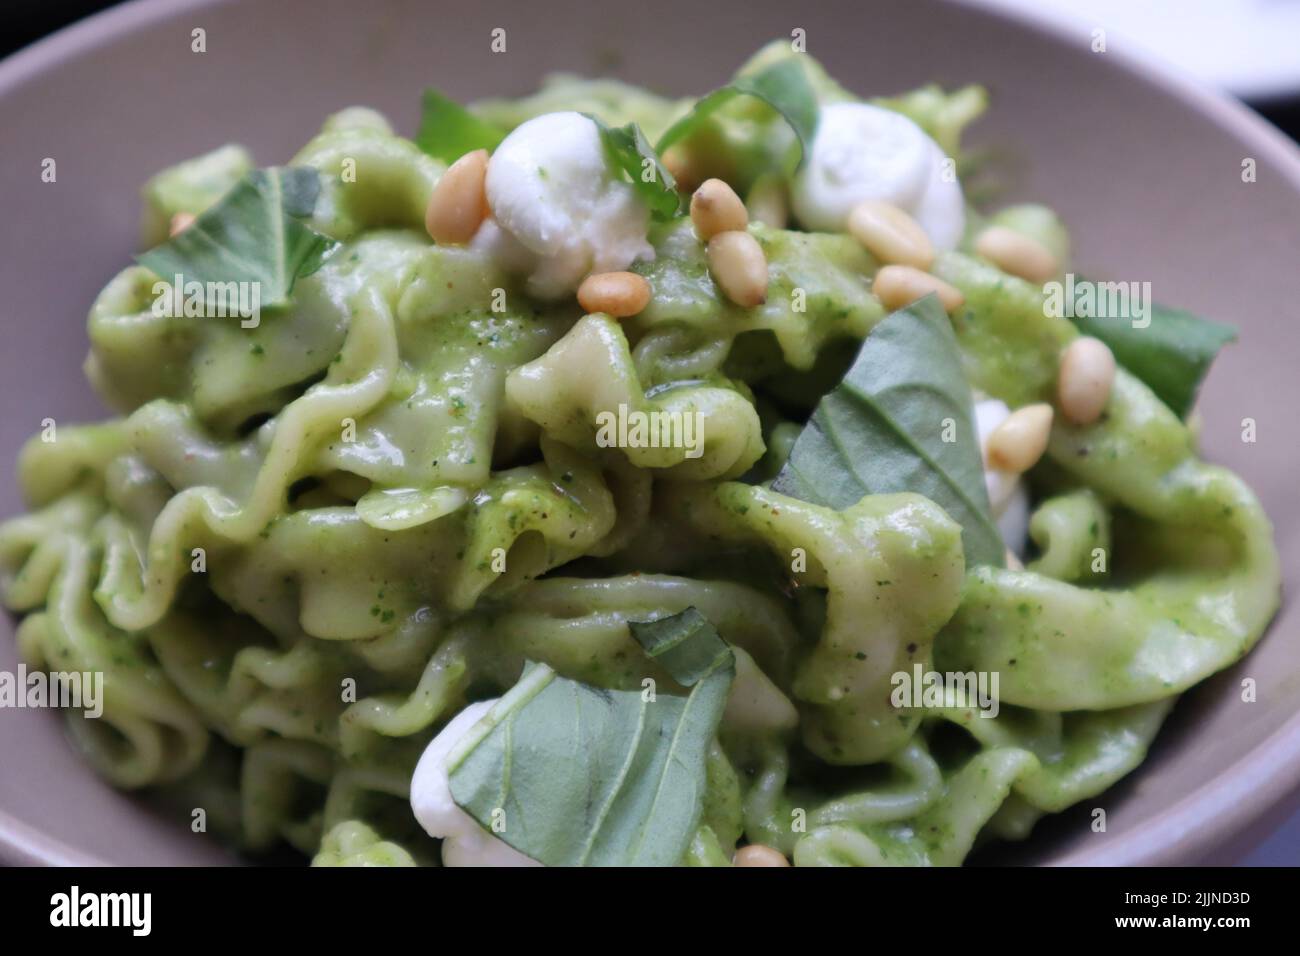 Primer plano de un plato con salsa pesto y verduras Foto de stock